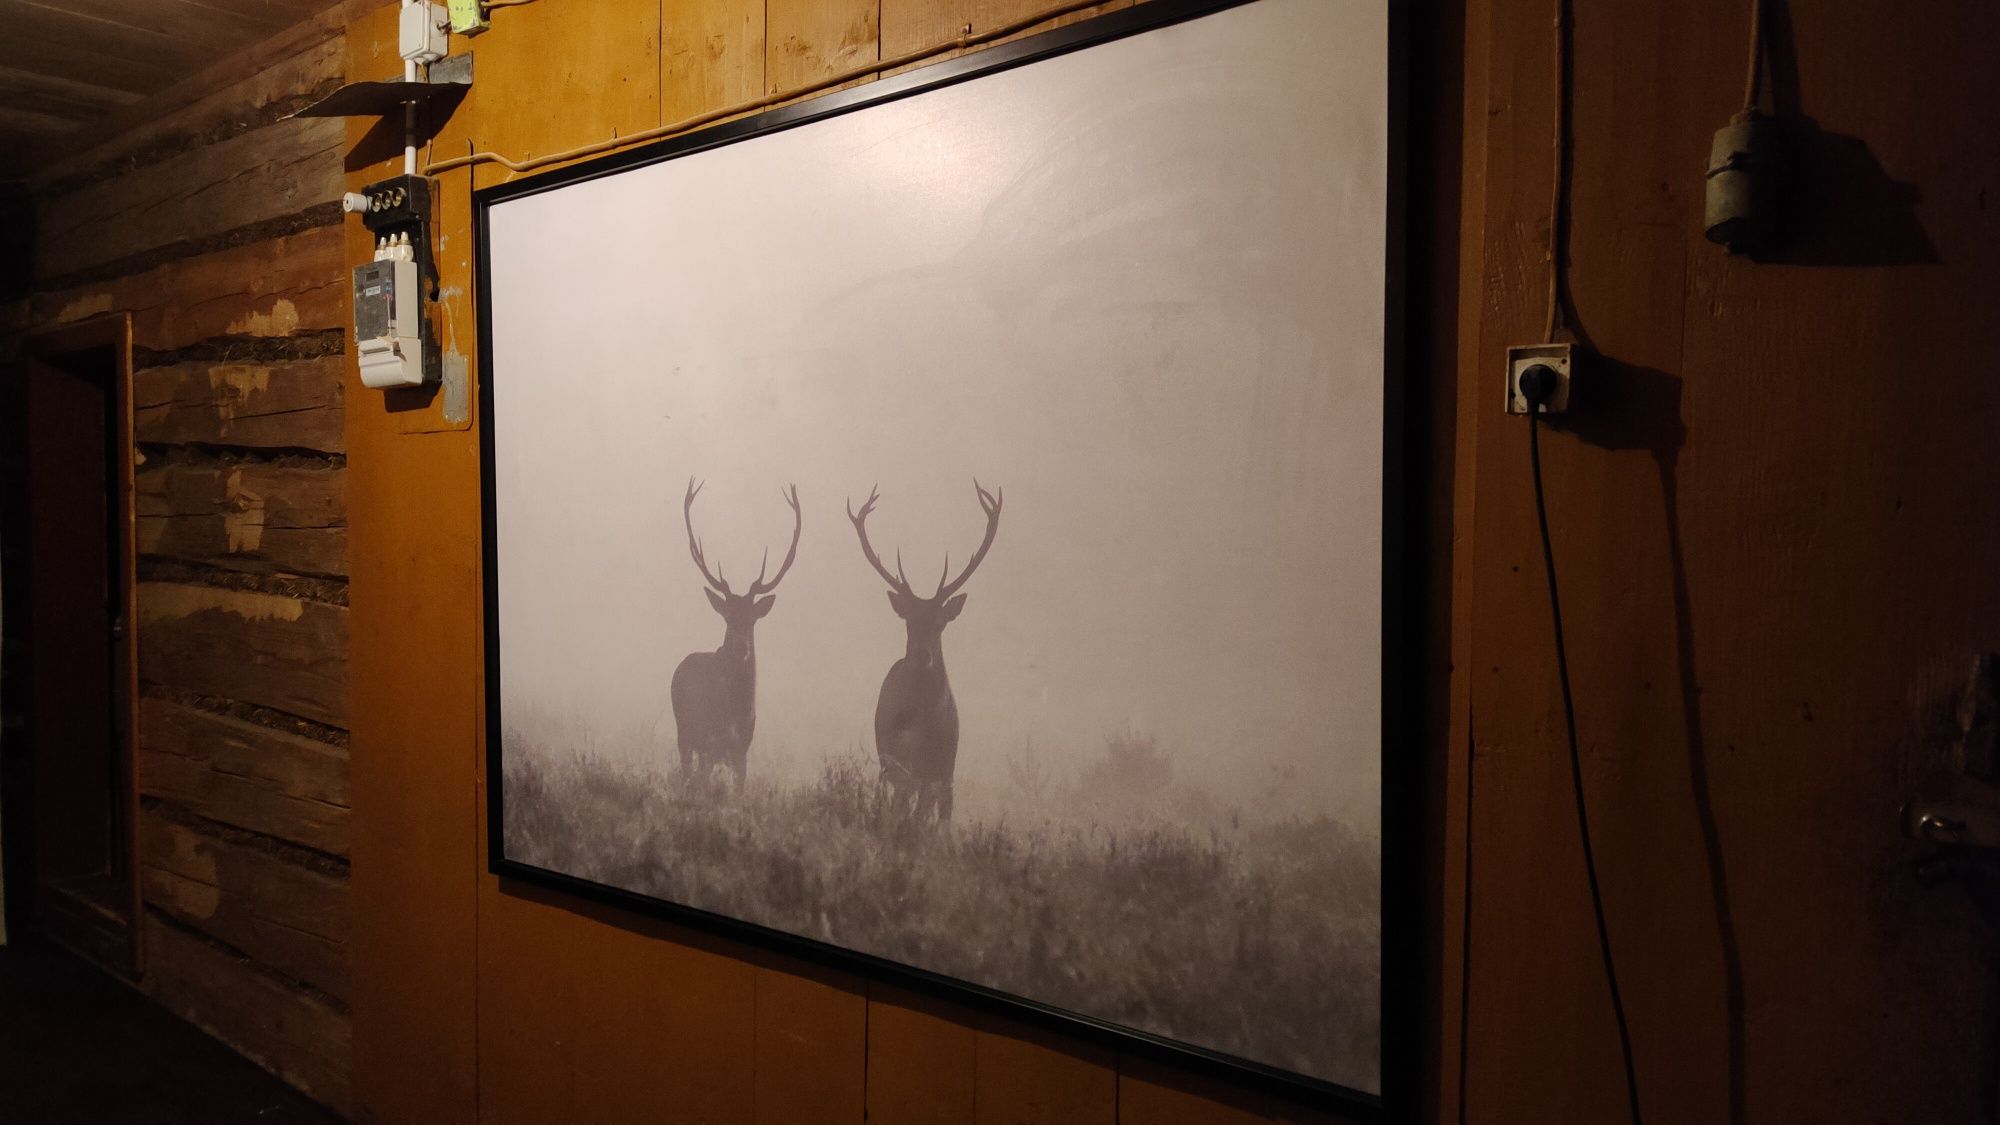 Obraz Ikea Bjorksta duzy 140x200 jelenie we mgle , jelen